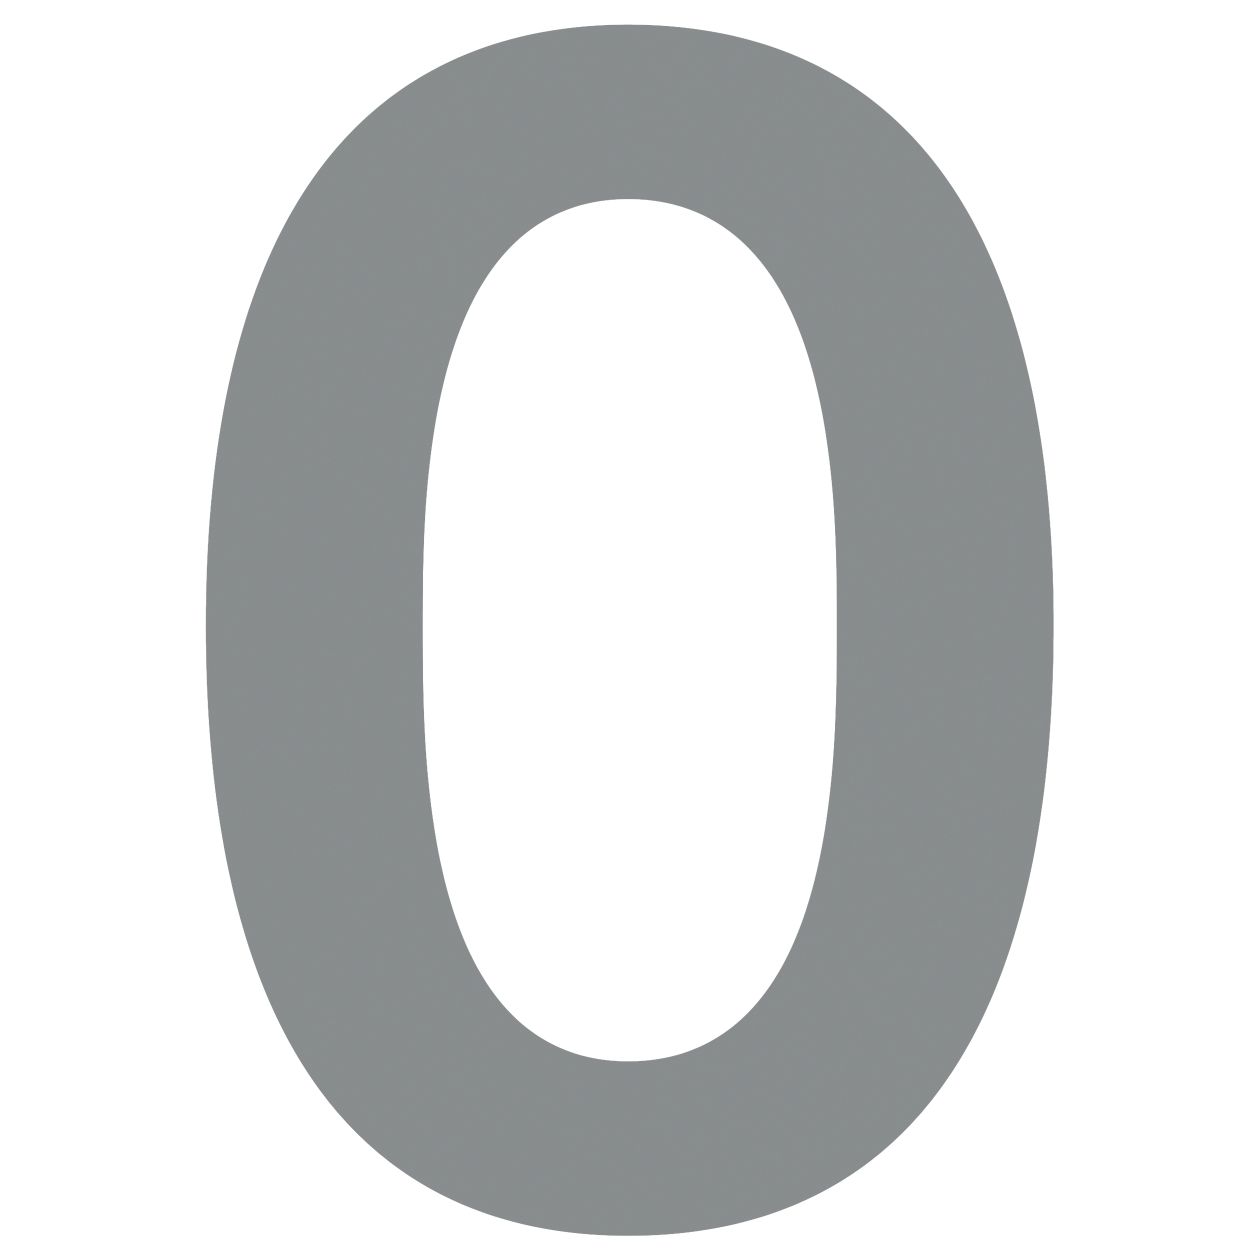 Numer na dom "0" szary metaliczny